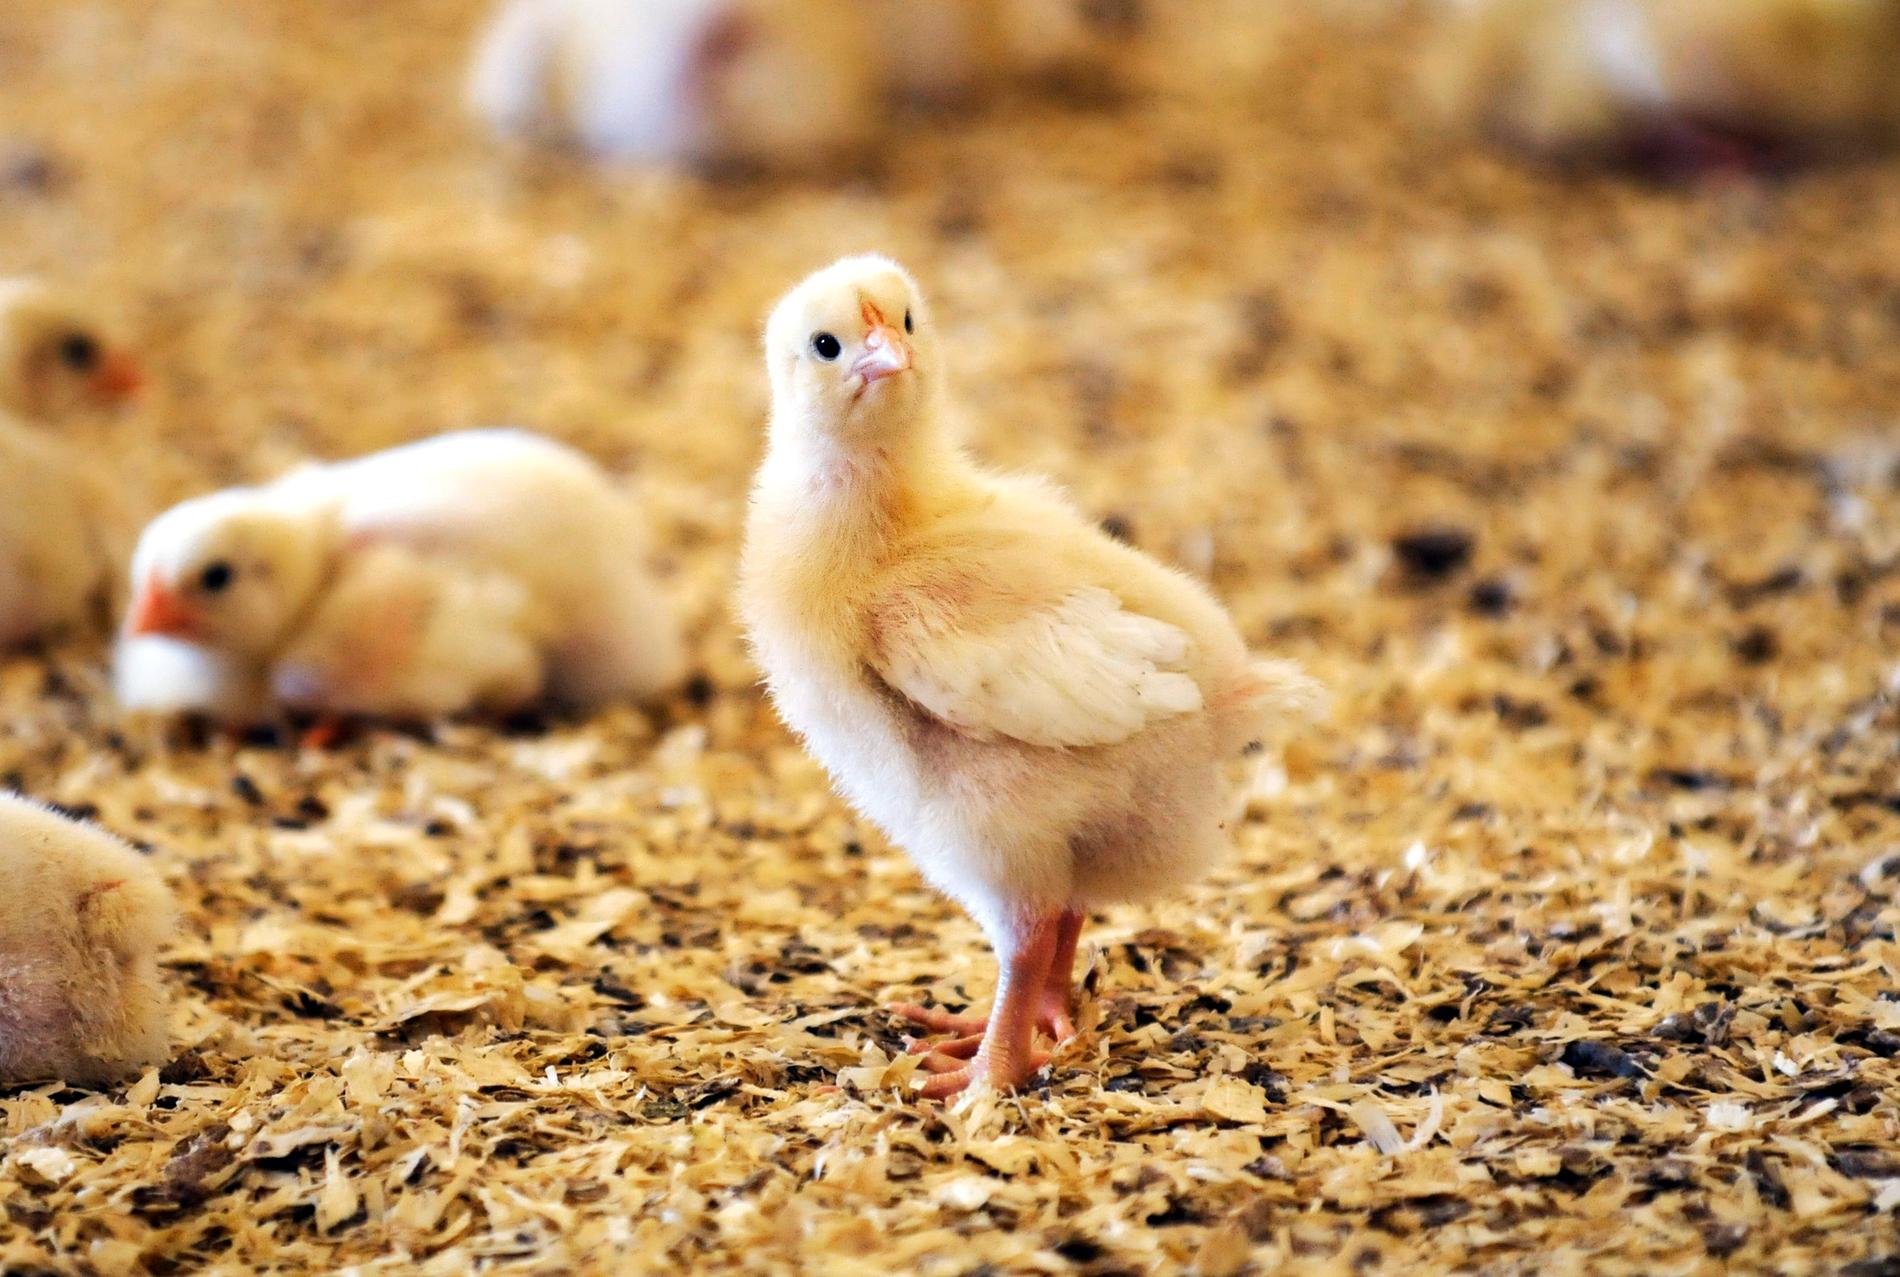 WWF har i sin köttguide granskat matvaror, däribland svensk kyckling, utifrån kriterier om biologisk mångfald, klimat, kemiska bekämpningsmedel, djurvälfärd och antibiotika. Arkivbild.